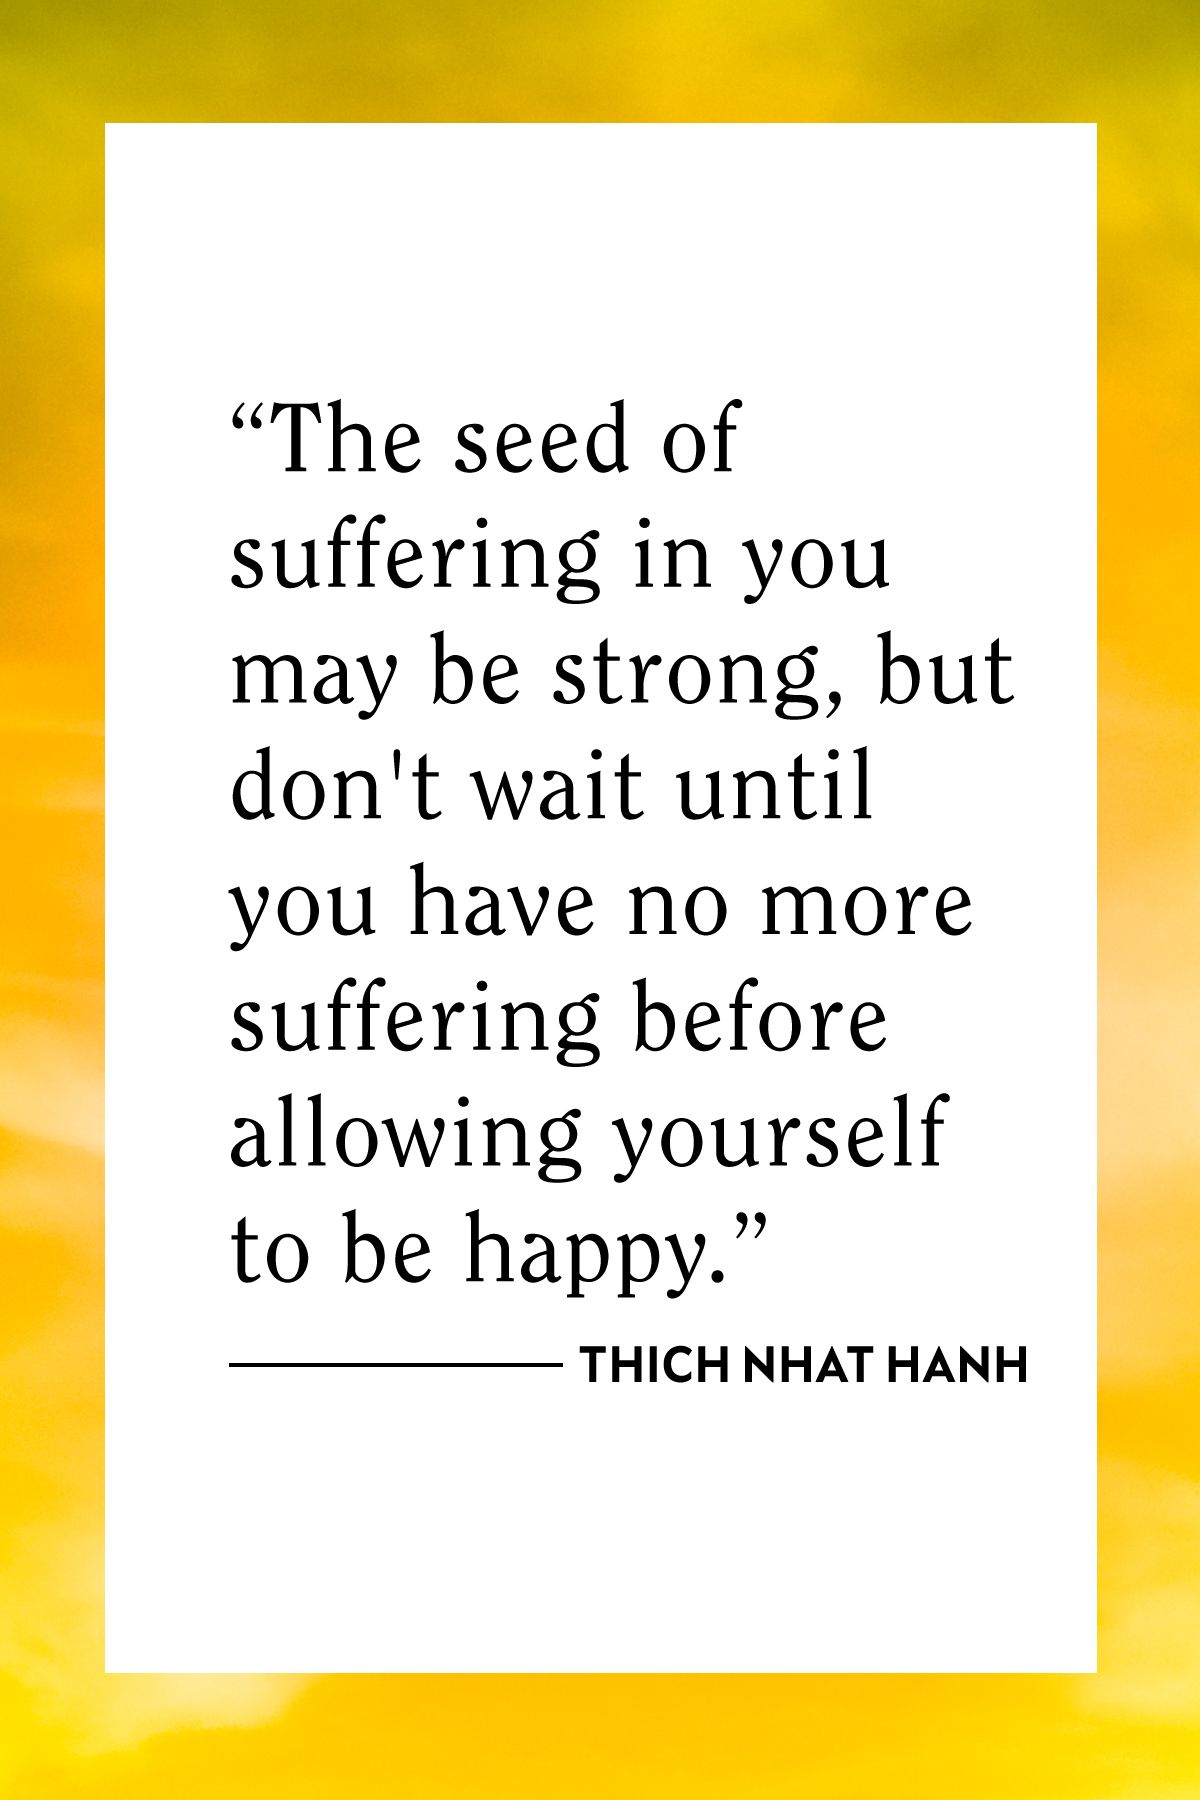 100 Citações de Thich Nhat Hanh (Sofrimento, Felicidade e Deixar ir)